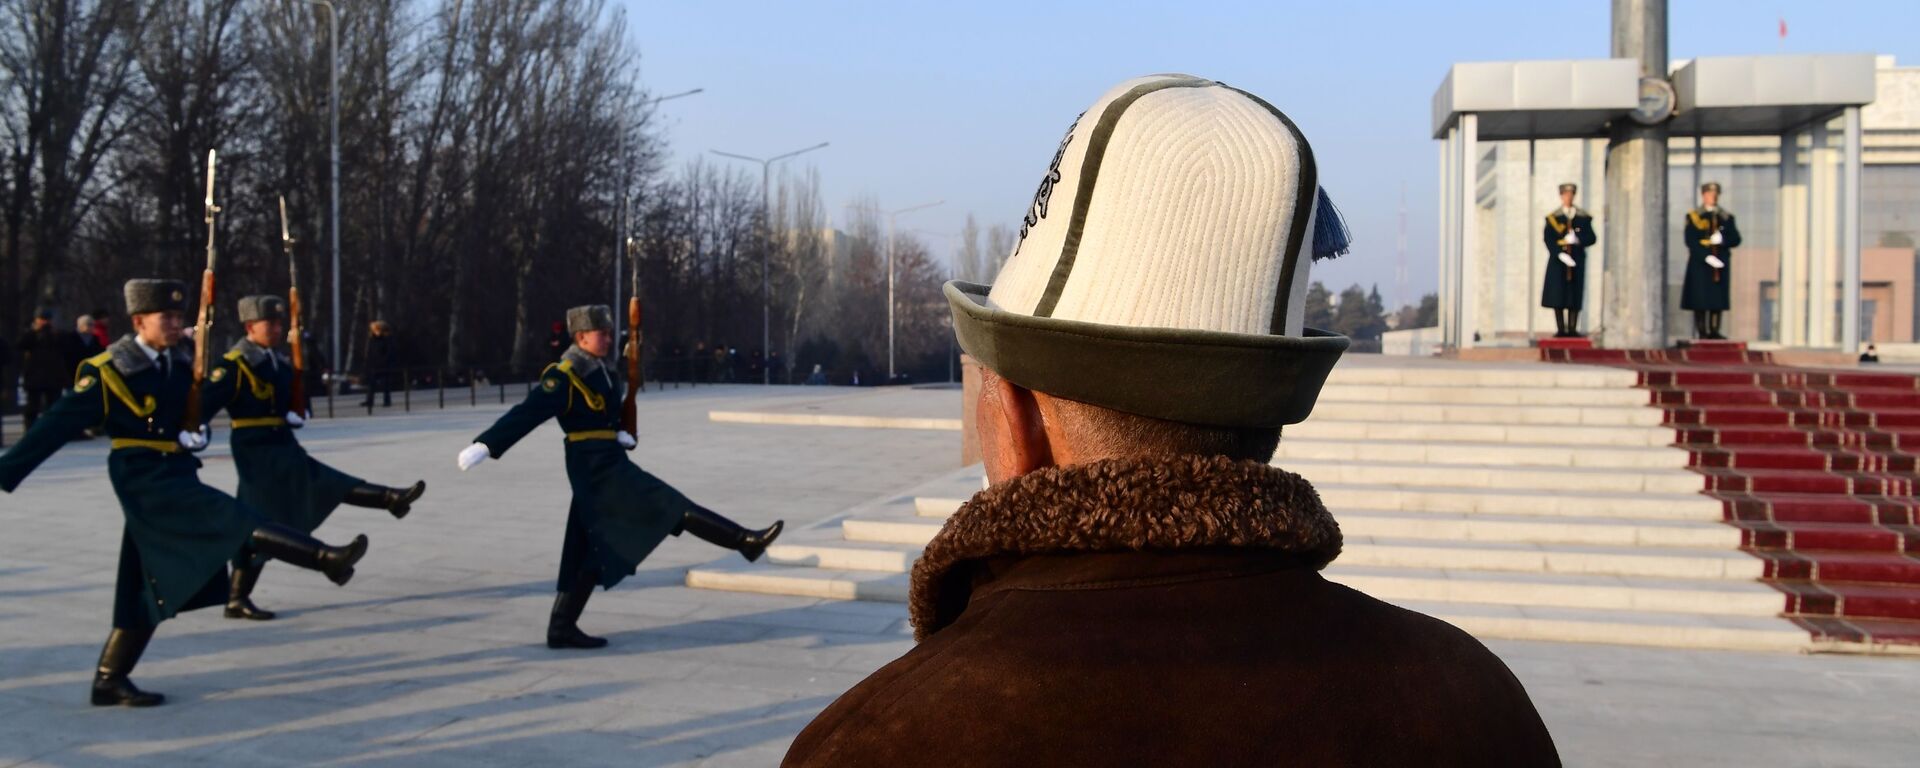 Смена почетного караула на площади Ала-Тоо в Бишкеке. Архивное фото - Sputnik Кыргызстан, 1920, 16.02.2022